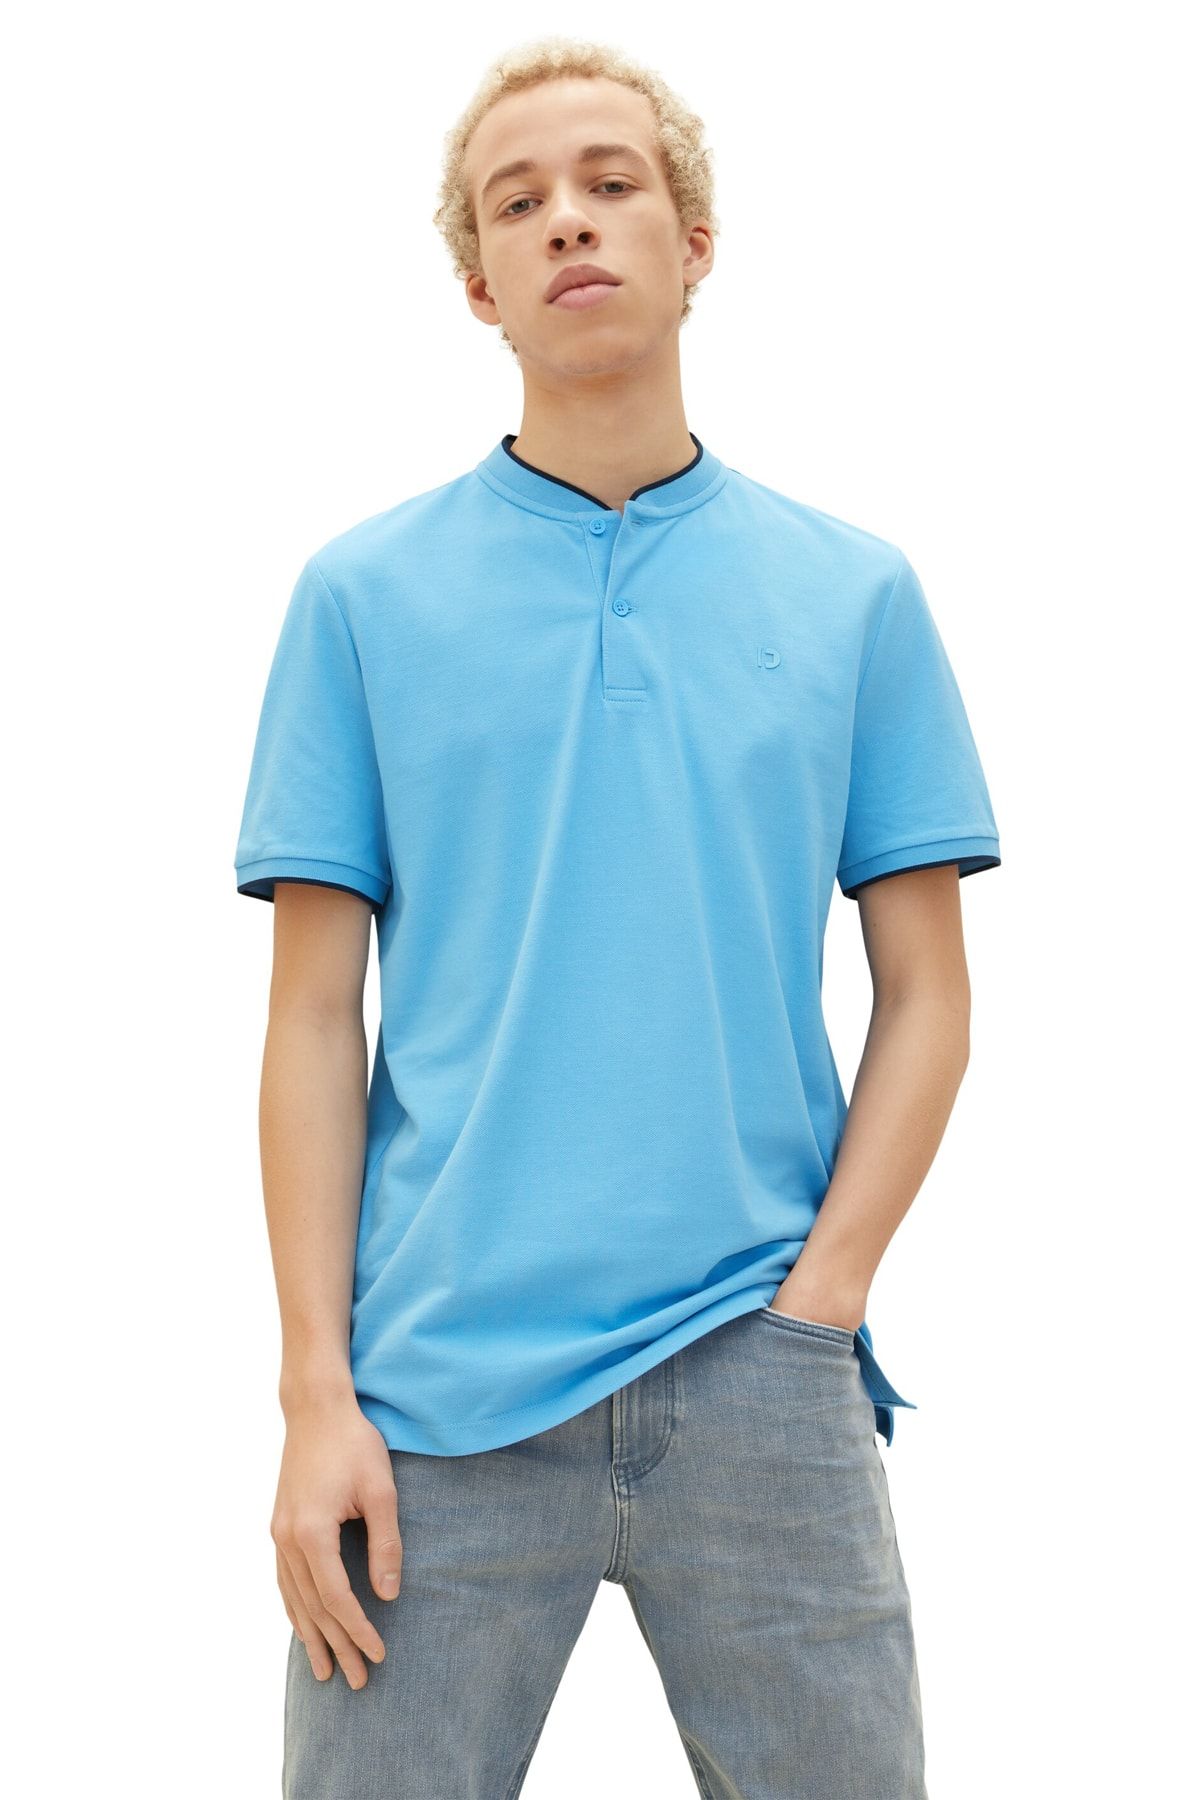 Tailor - Polo Trendyol - Denim - T-shirt Tom fit Blue Regular